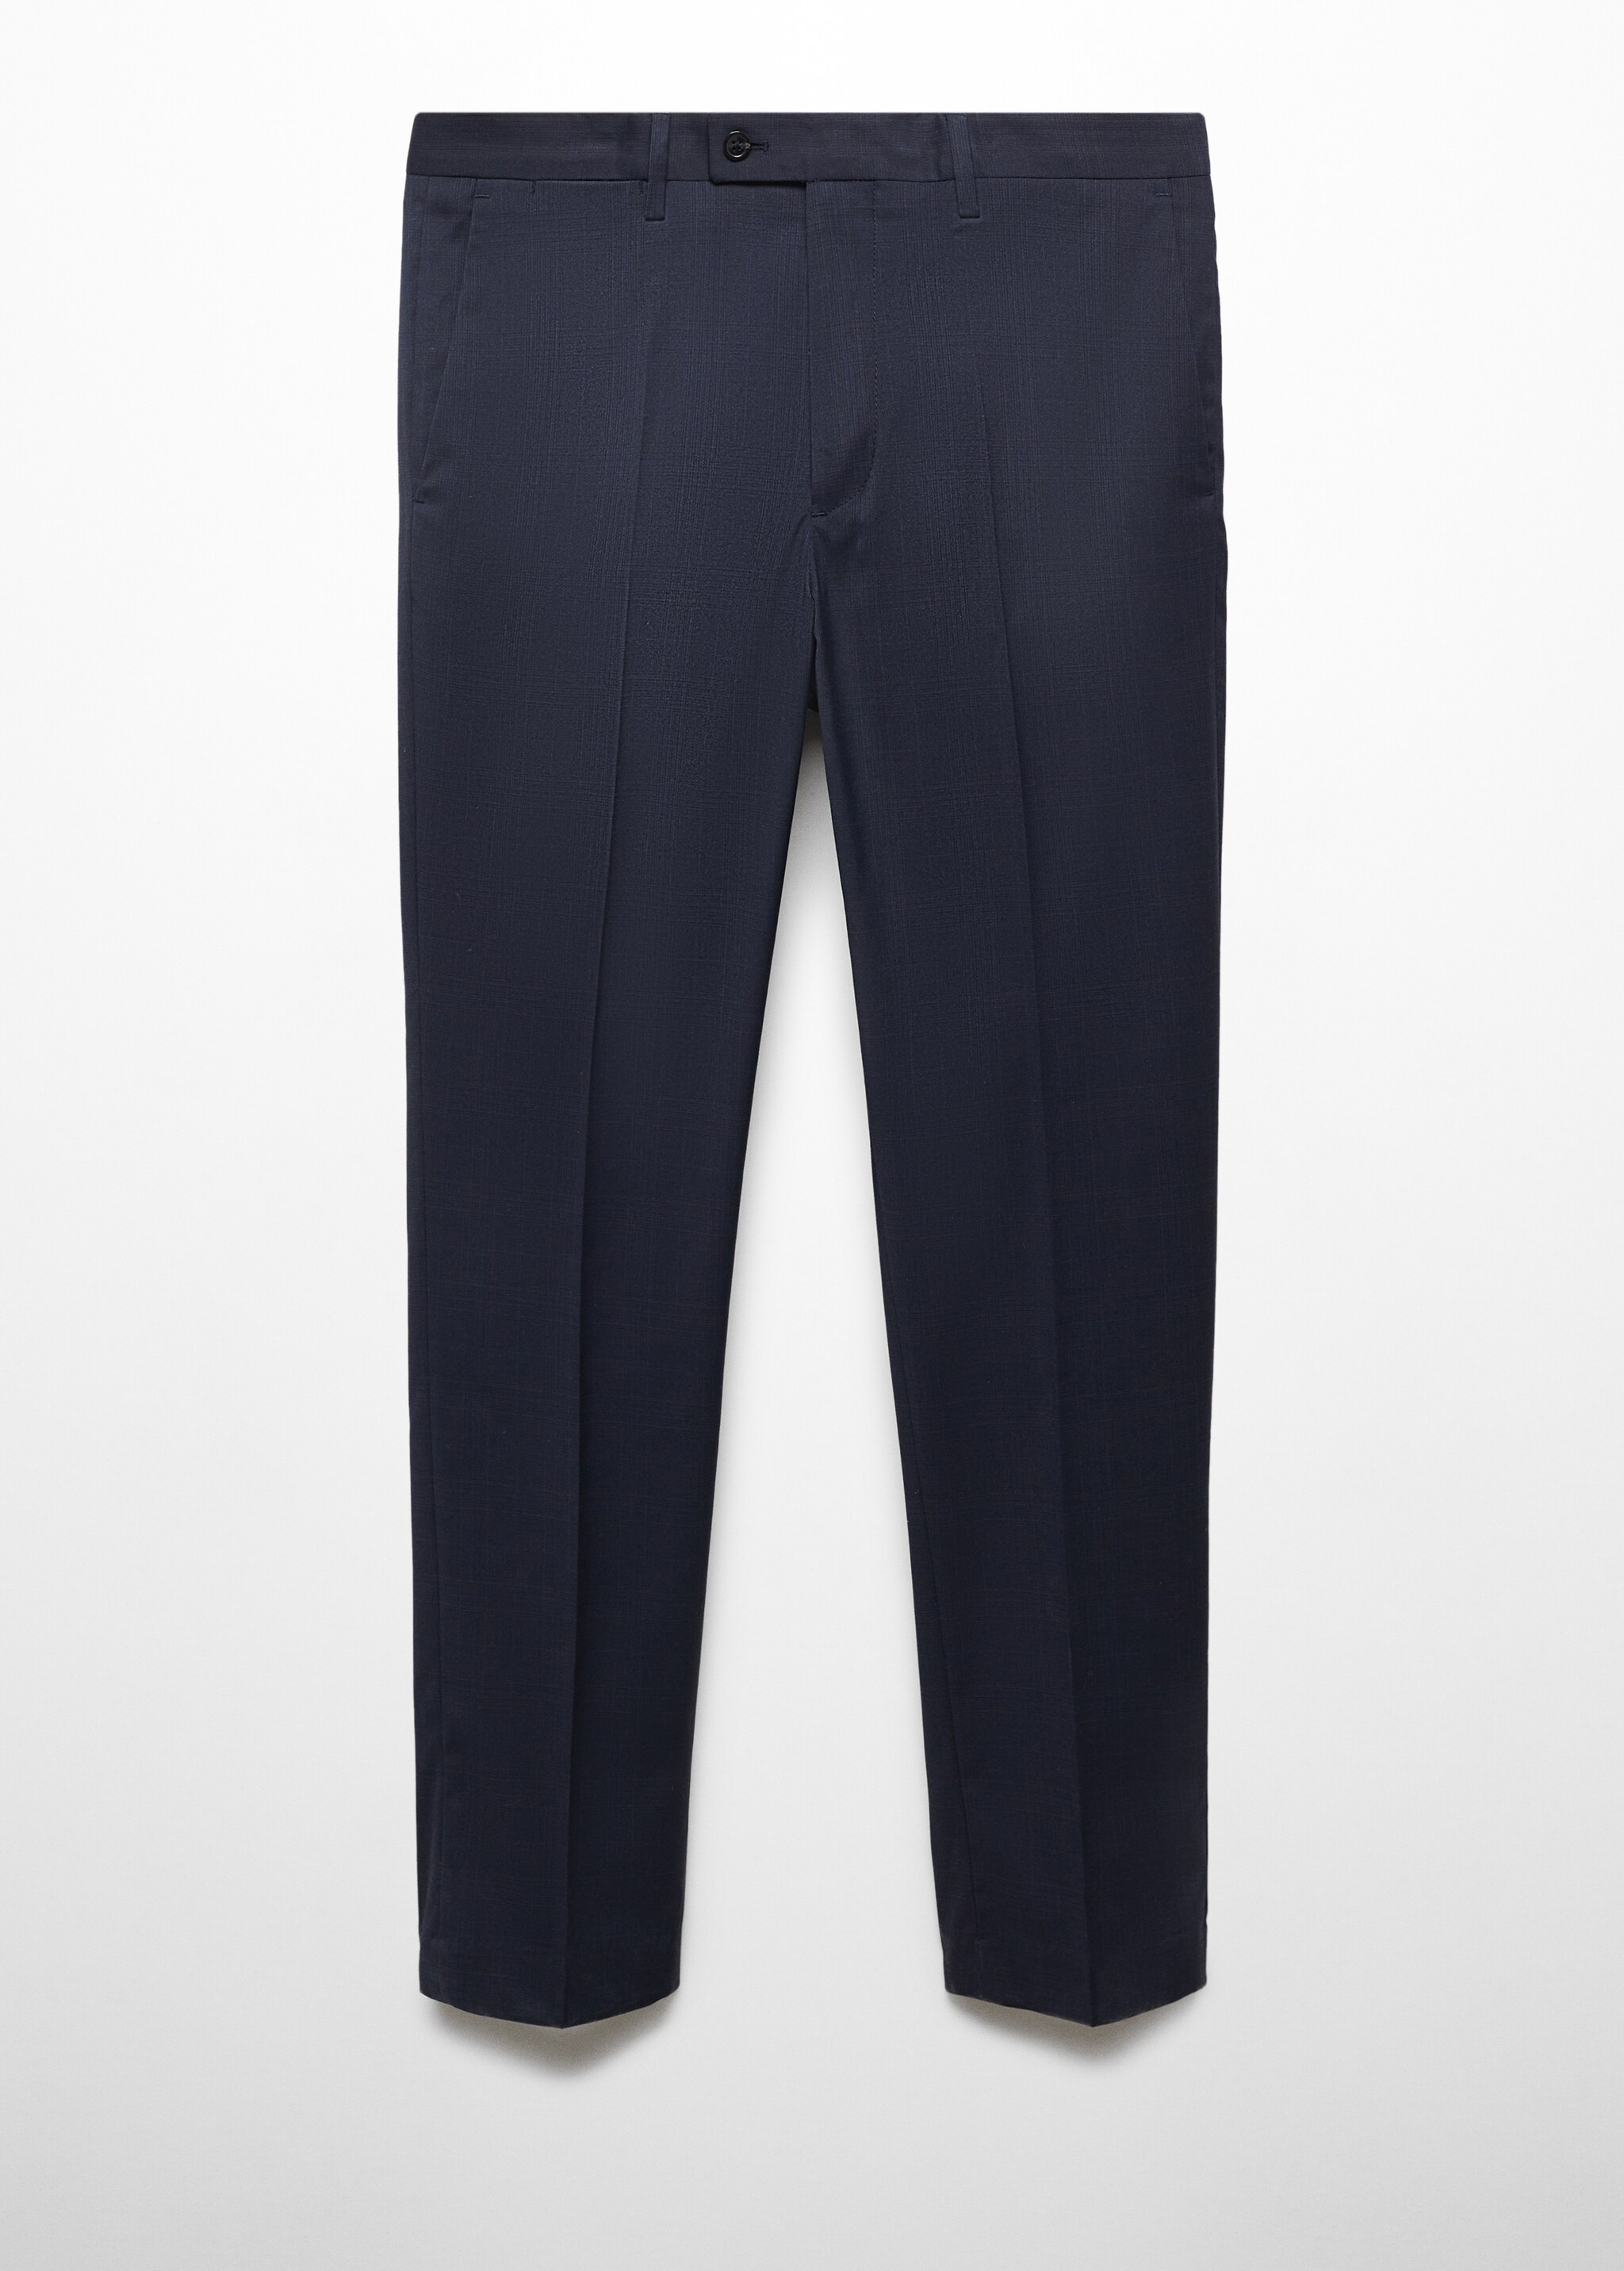 Костюмные брюки slim fit из ткани стретч - Изделие без модели